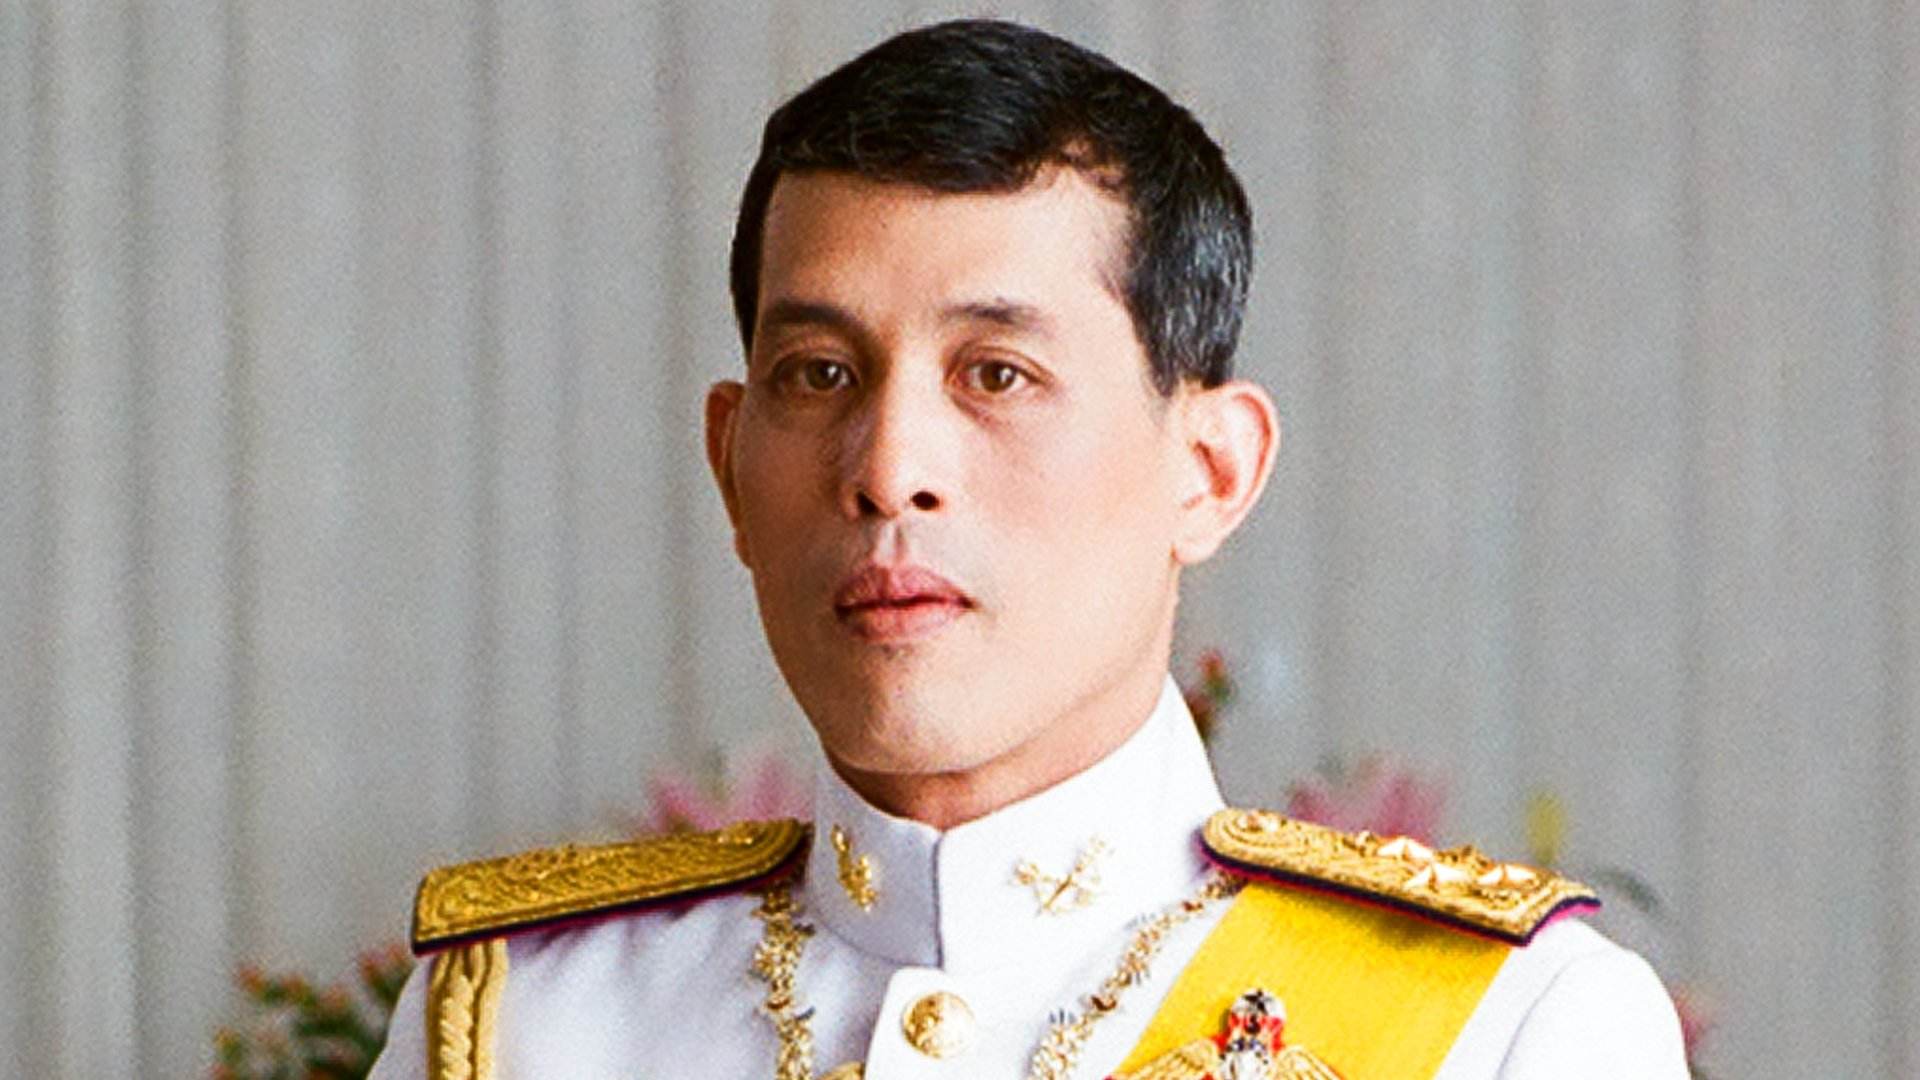 Addicte al sexe, tops i tatuatges: l'excèntric rei de Tailàndia que pot salvar Daniel Sancho